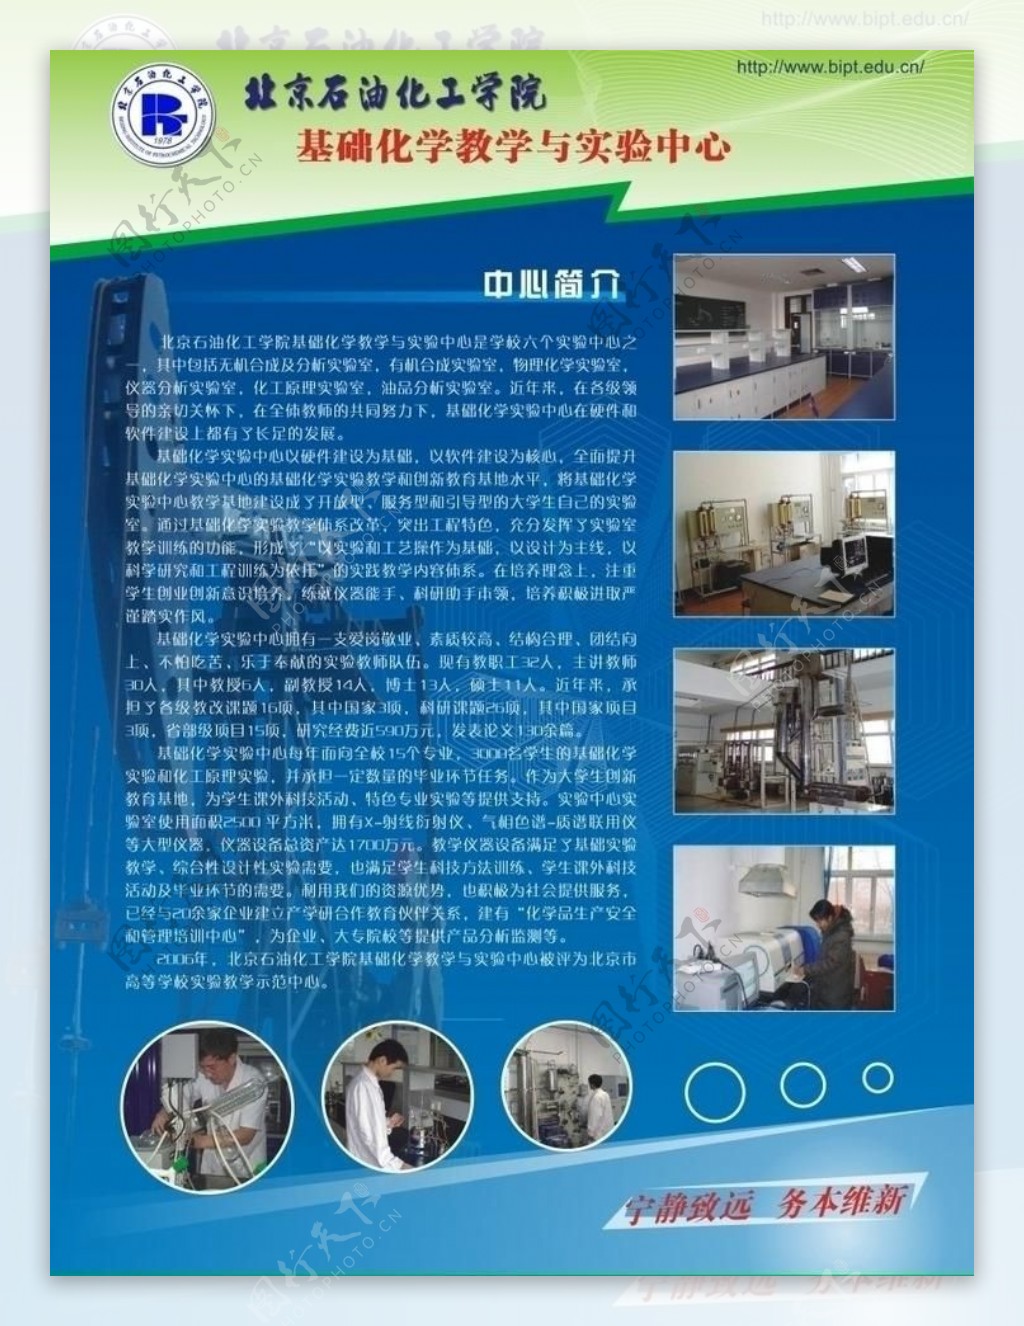 北京石油化工学院宣传彩页